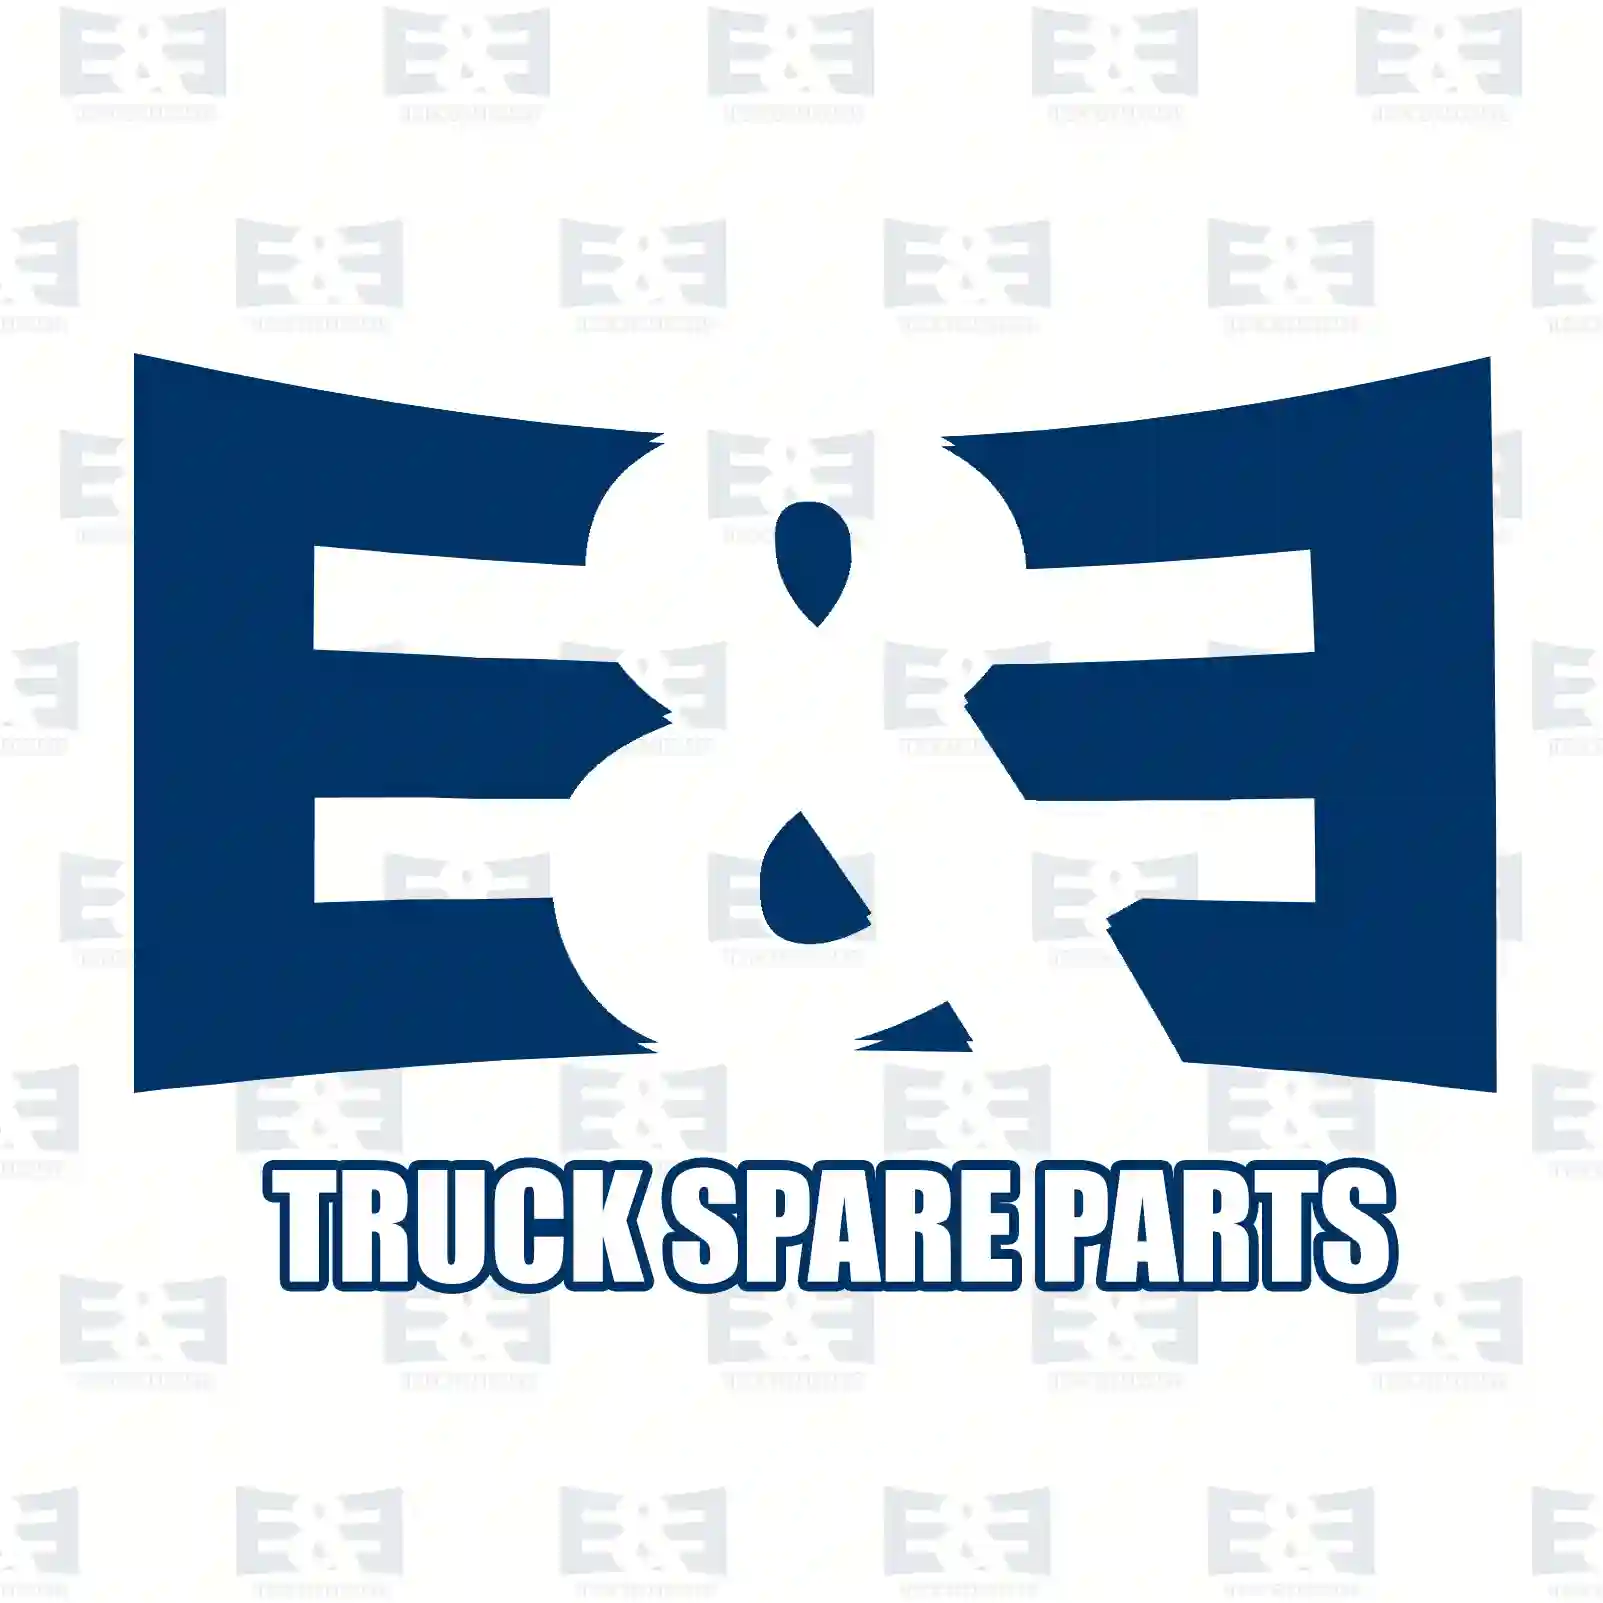 Wiper motor, 2E2293171, 81264016132, 81264016133, 81264016135, 81264016138, 81264016139, 81264016140, 81264016141, 81264016142, 81264016143, 2V5955113, ZG20203-0008 ||  2E2293171 E&E Truck Spare Parts | Truck Spare Parts, Auotomotive Spare Parts Wiper motor, 2E2293171, 81264016132, 81264016133, 81264016135, 81264016138, 81264016139, 81264016140, 81264016141, 81264016142, 81264016143, 2V5955113, ZG20203-0008 ||  2E2293171 E&E Truck Spare Parts | Truck Spare Parts, Auotomotive Spare Parts